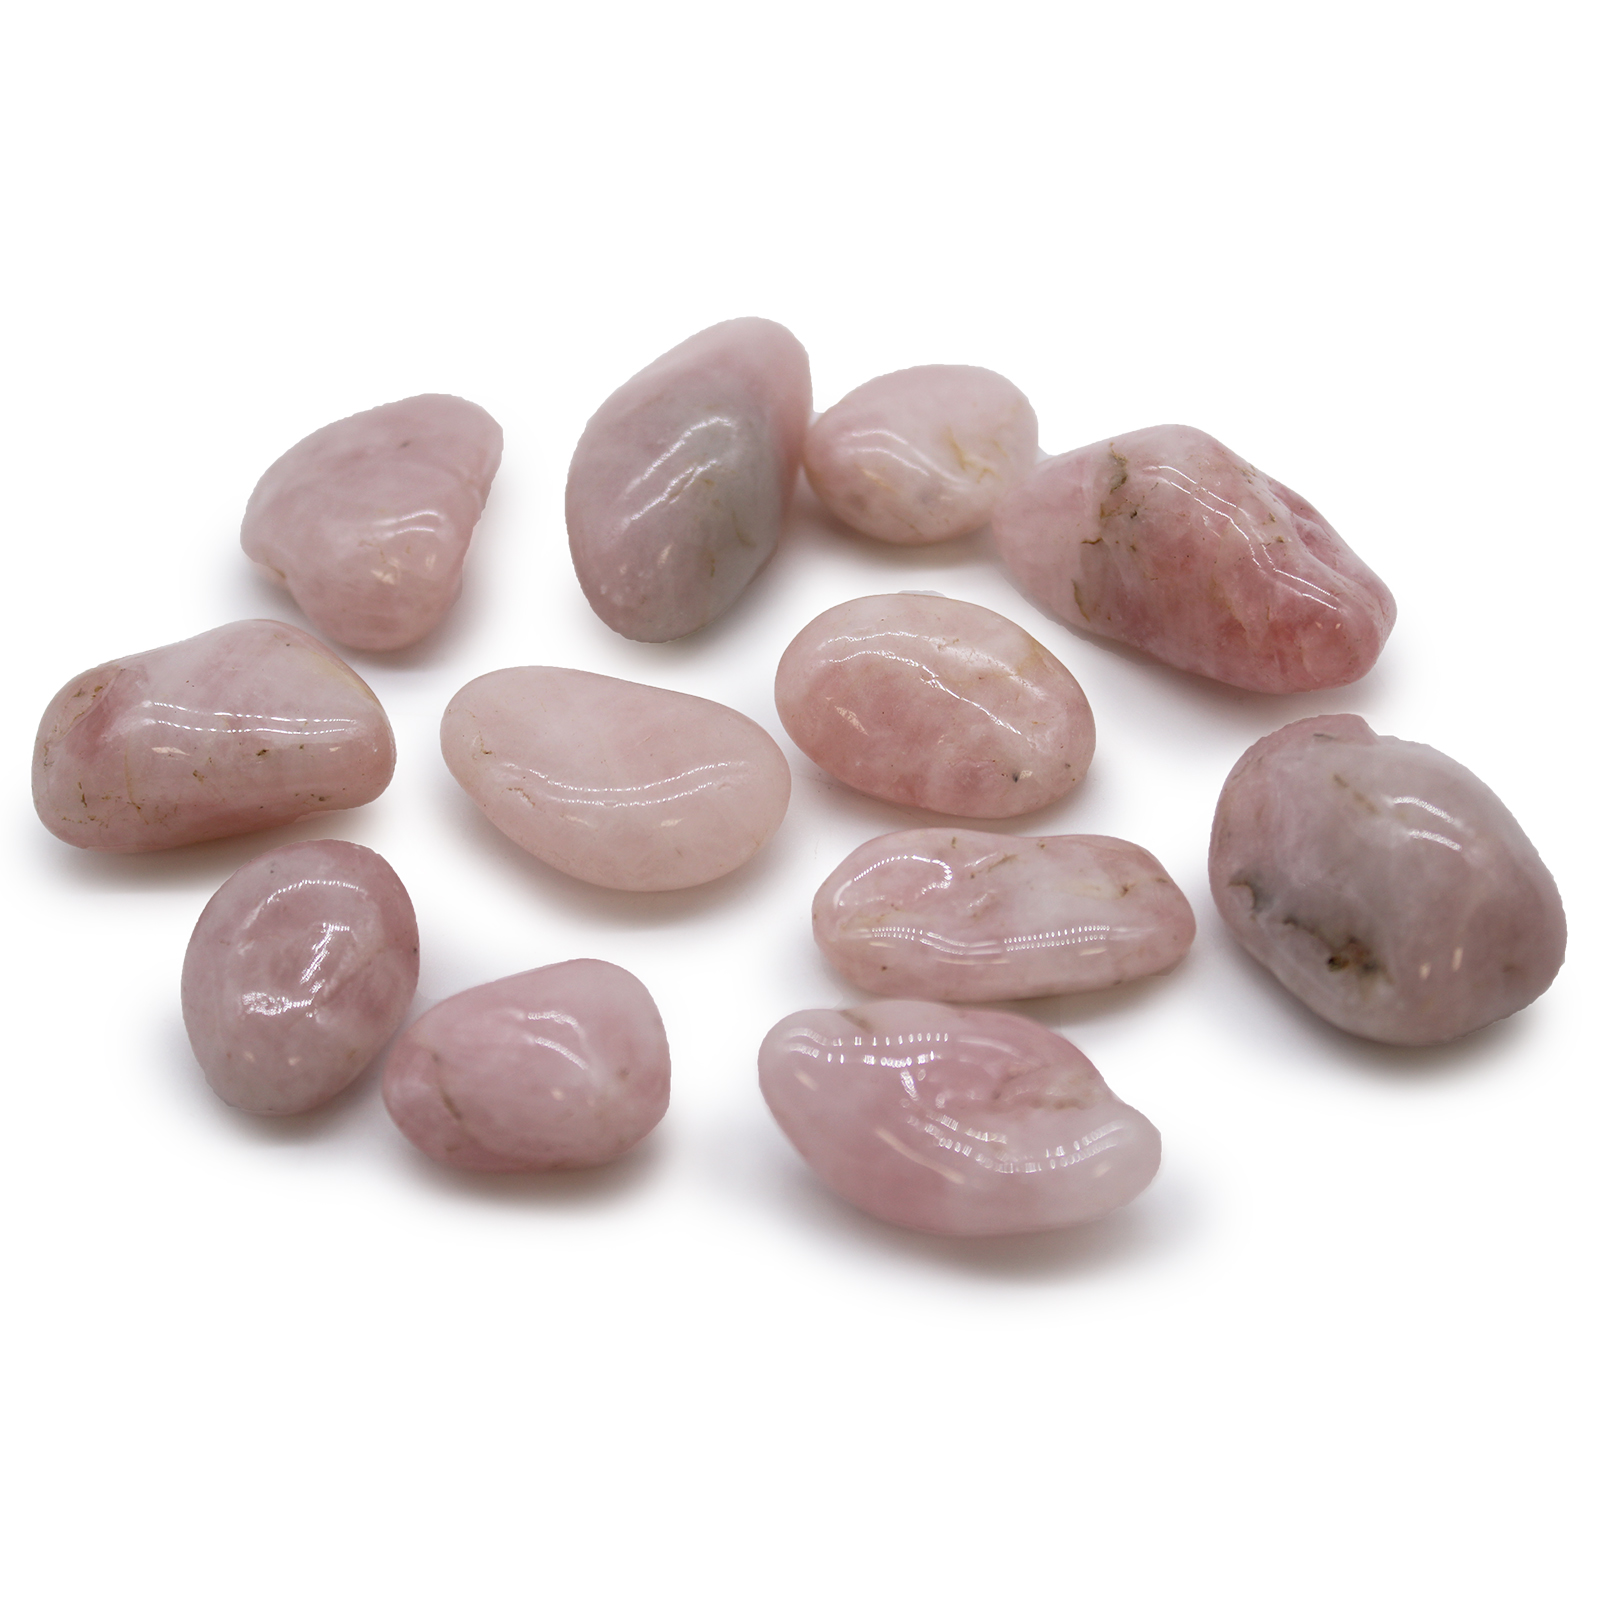 12 x Medium African Tumble Stones - Rose Quartz